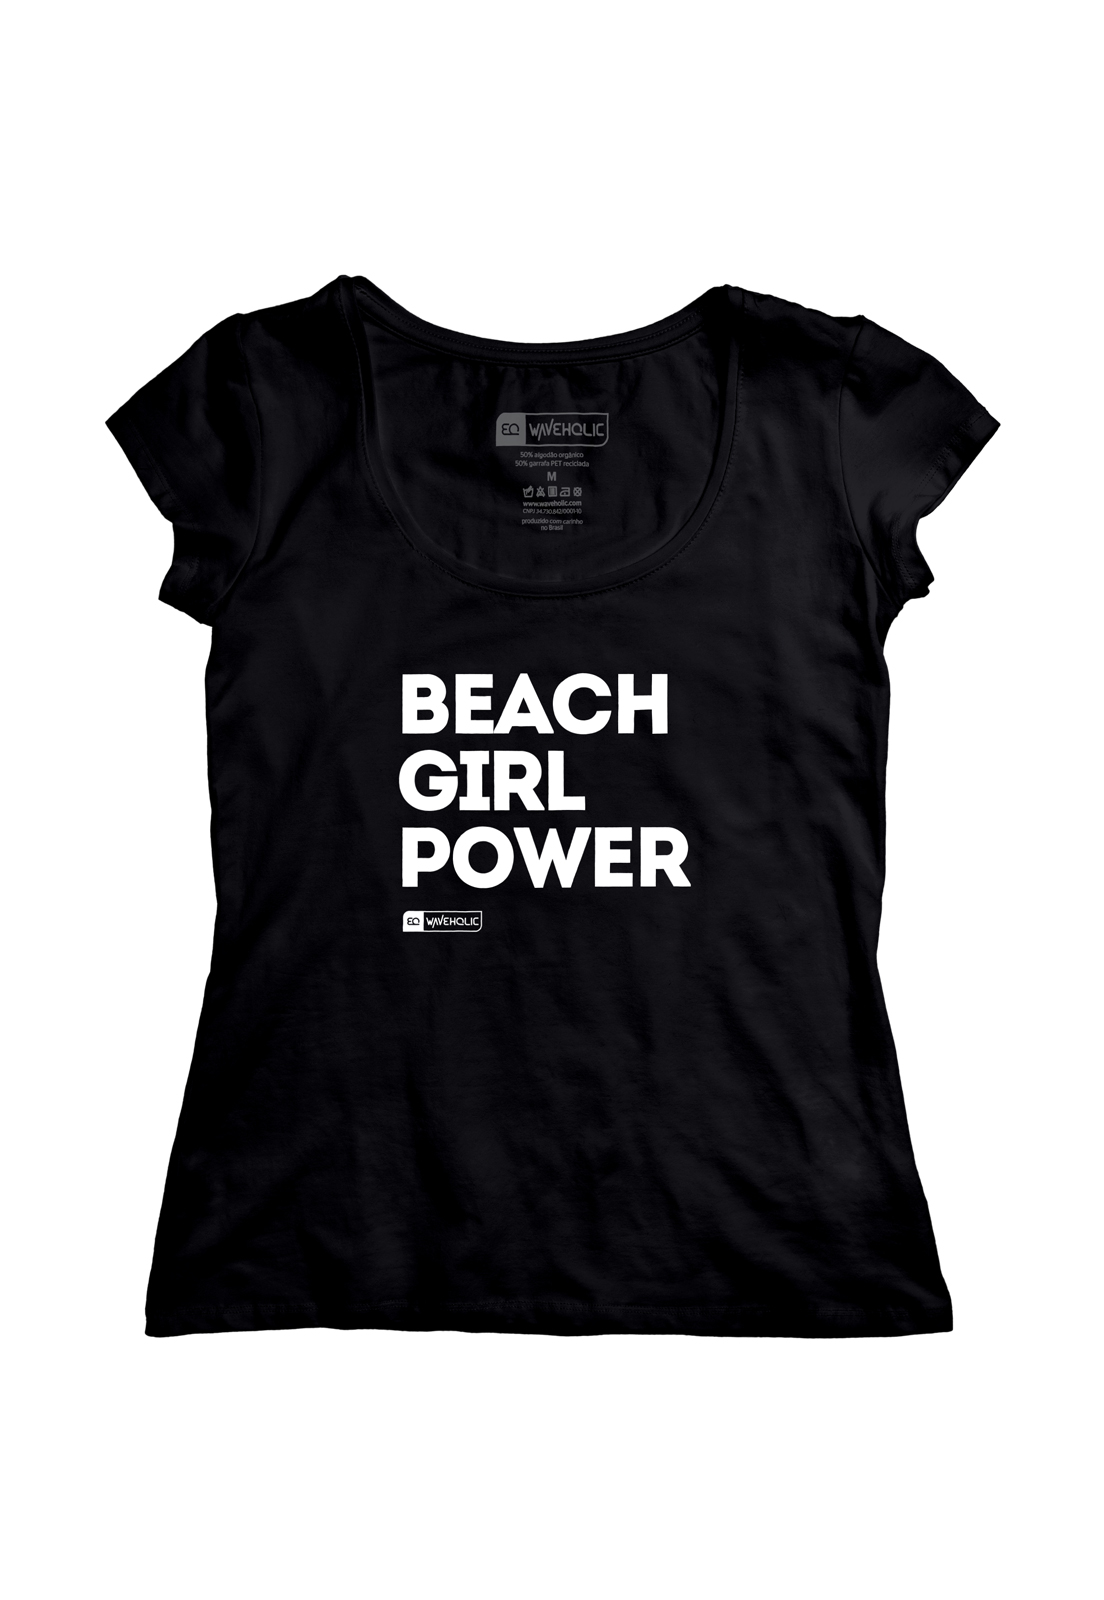 Blusa com frase beach girl power branca ou preta que preserva